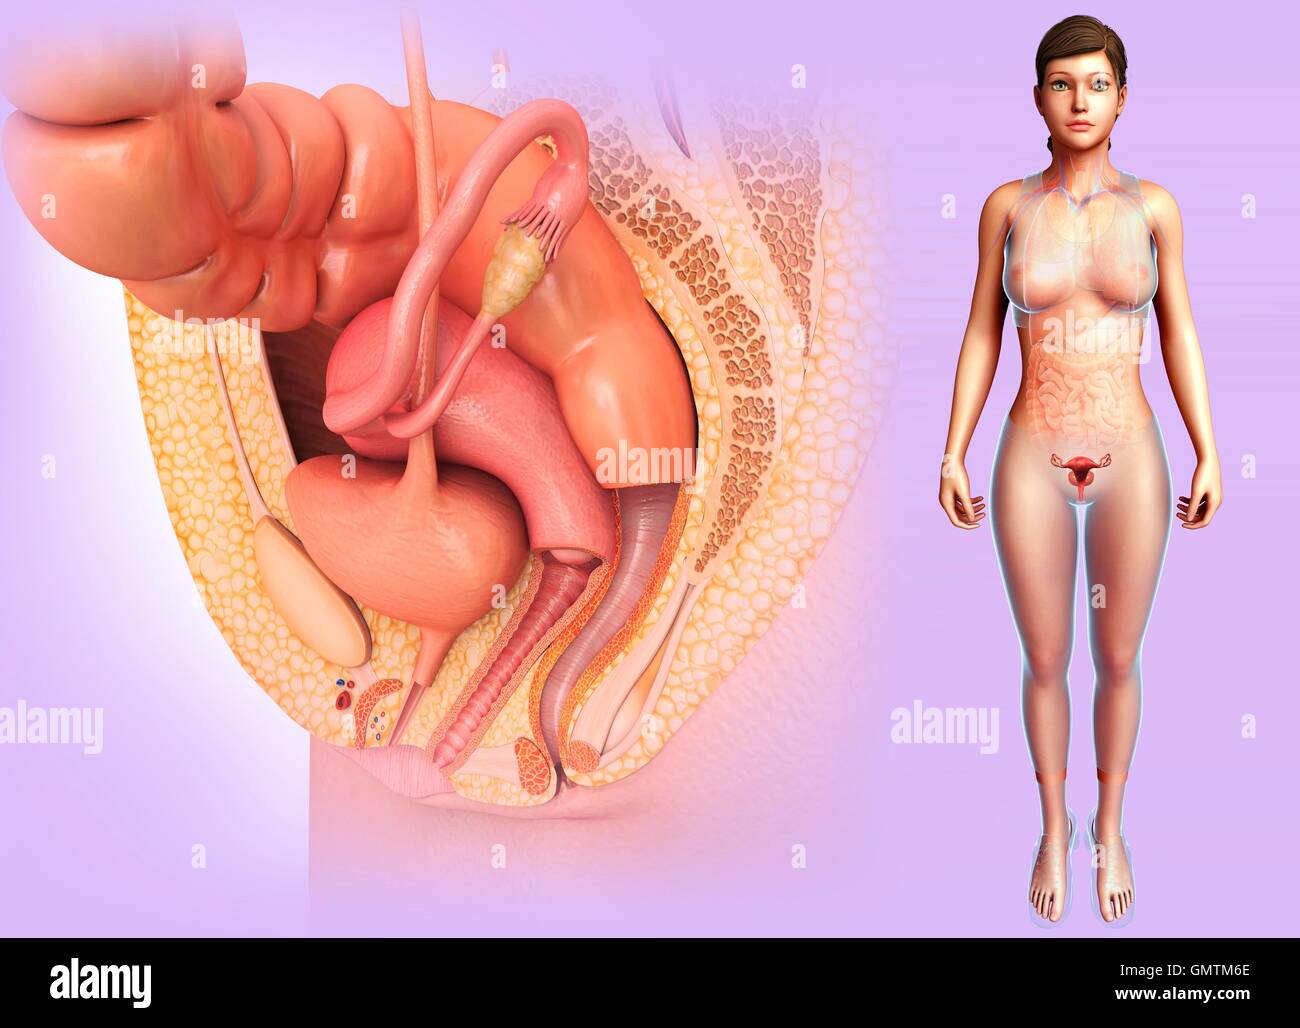 https://c8.alamy.com/comp/GMTM6E/illustration-of-female-reproductive-system-GMTM6E.jpg